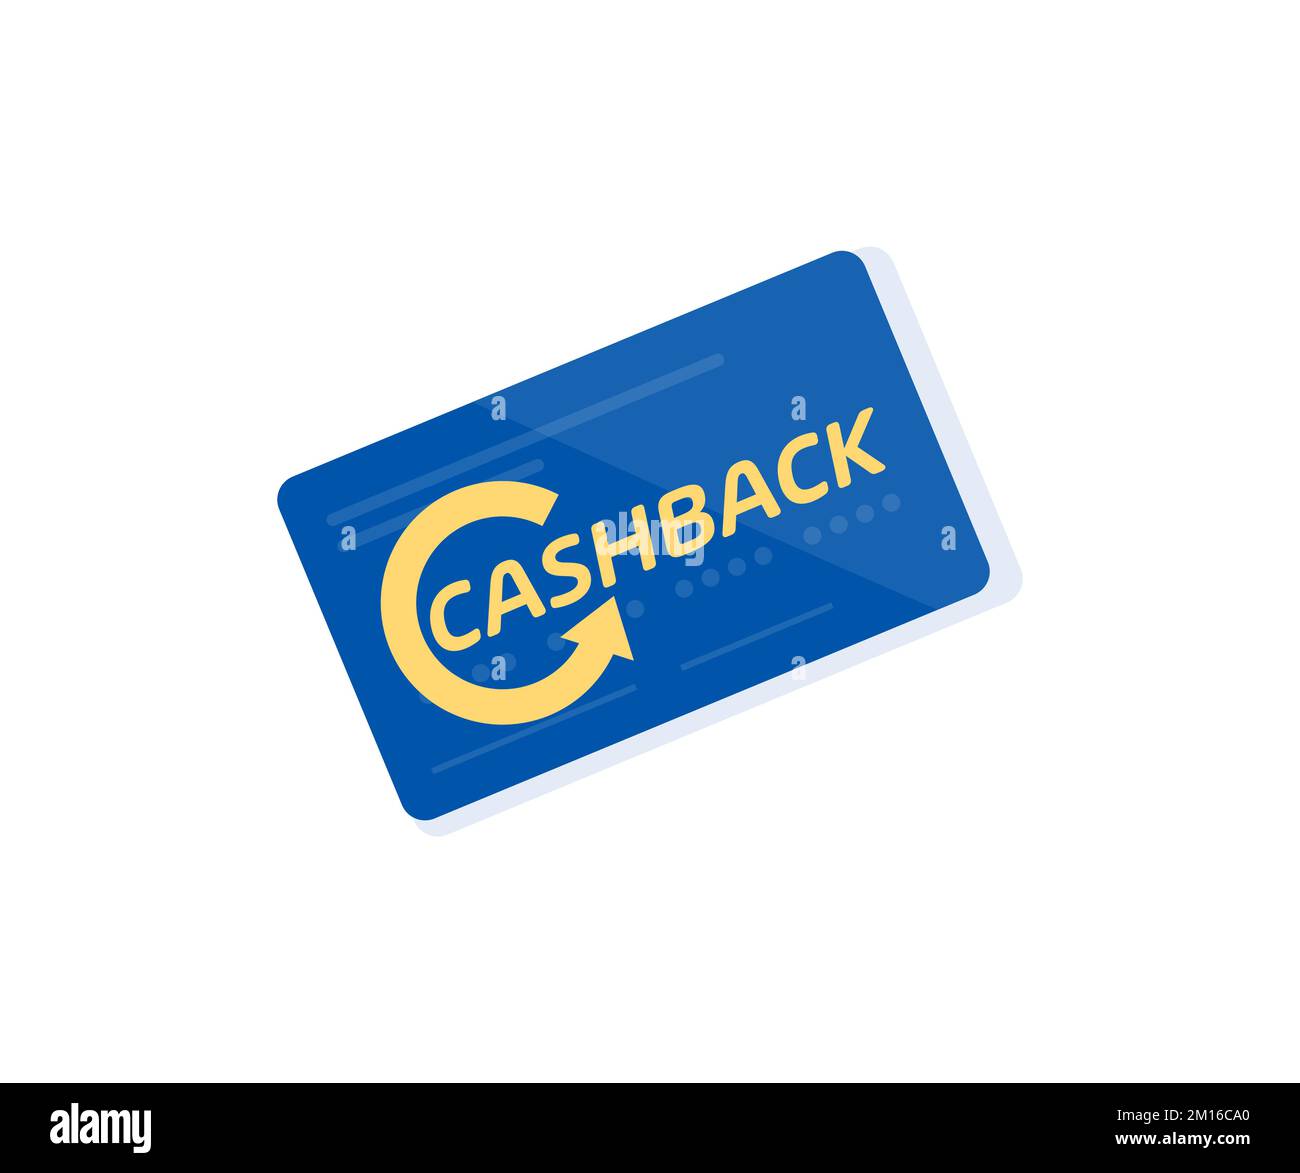 Concetto di programma di fidelizzazione cashback per il logo blu delle carte di credito. Segnali di rimborso denaro. Restituzione di denaro dagli acquisti. Servizio di rimborso denaro. Illustrazione Vettoriale